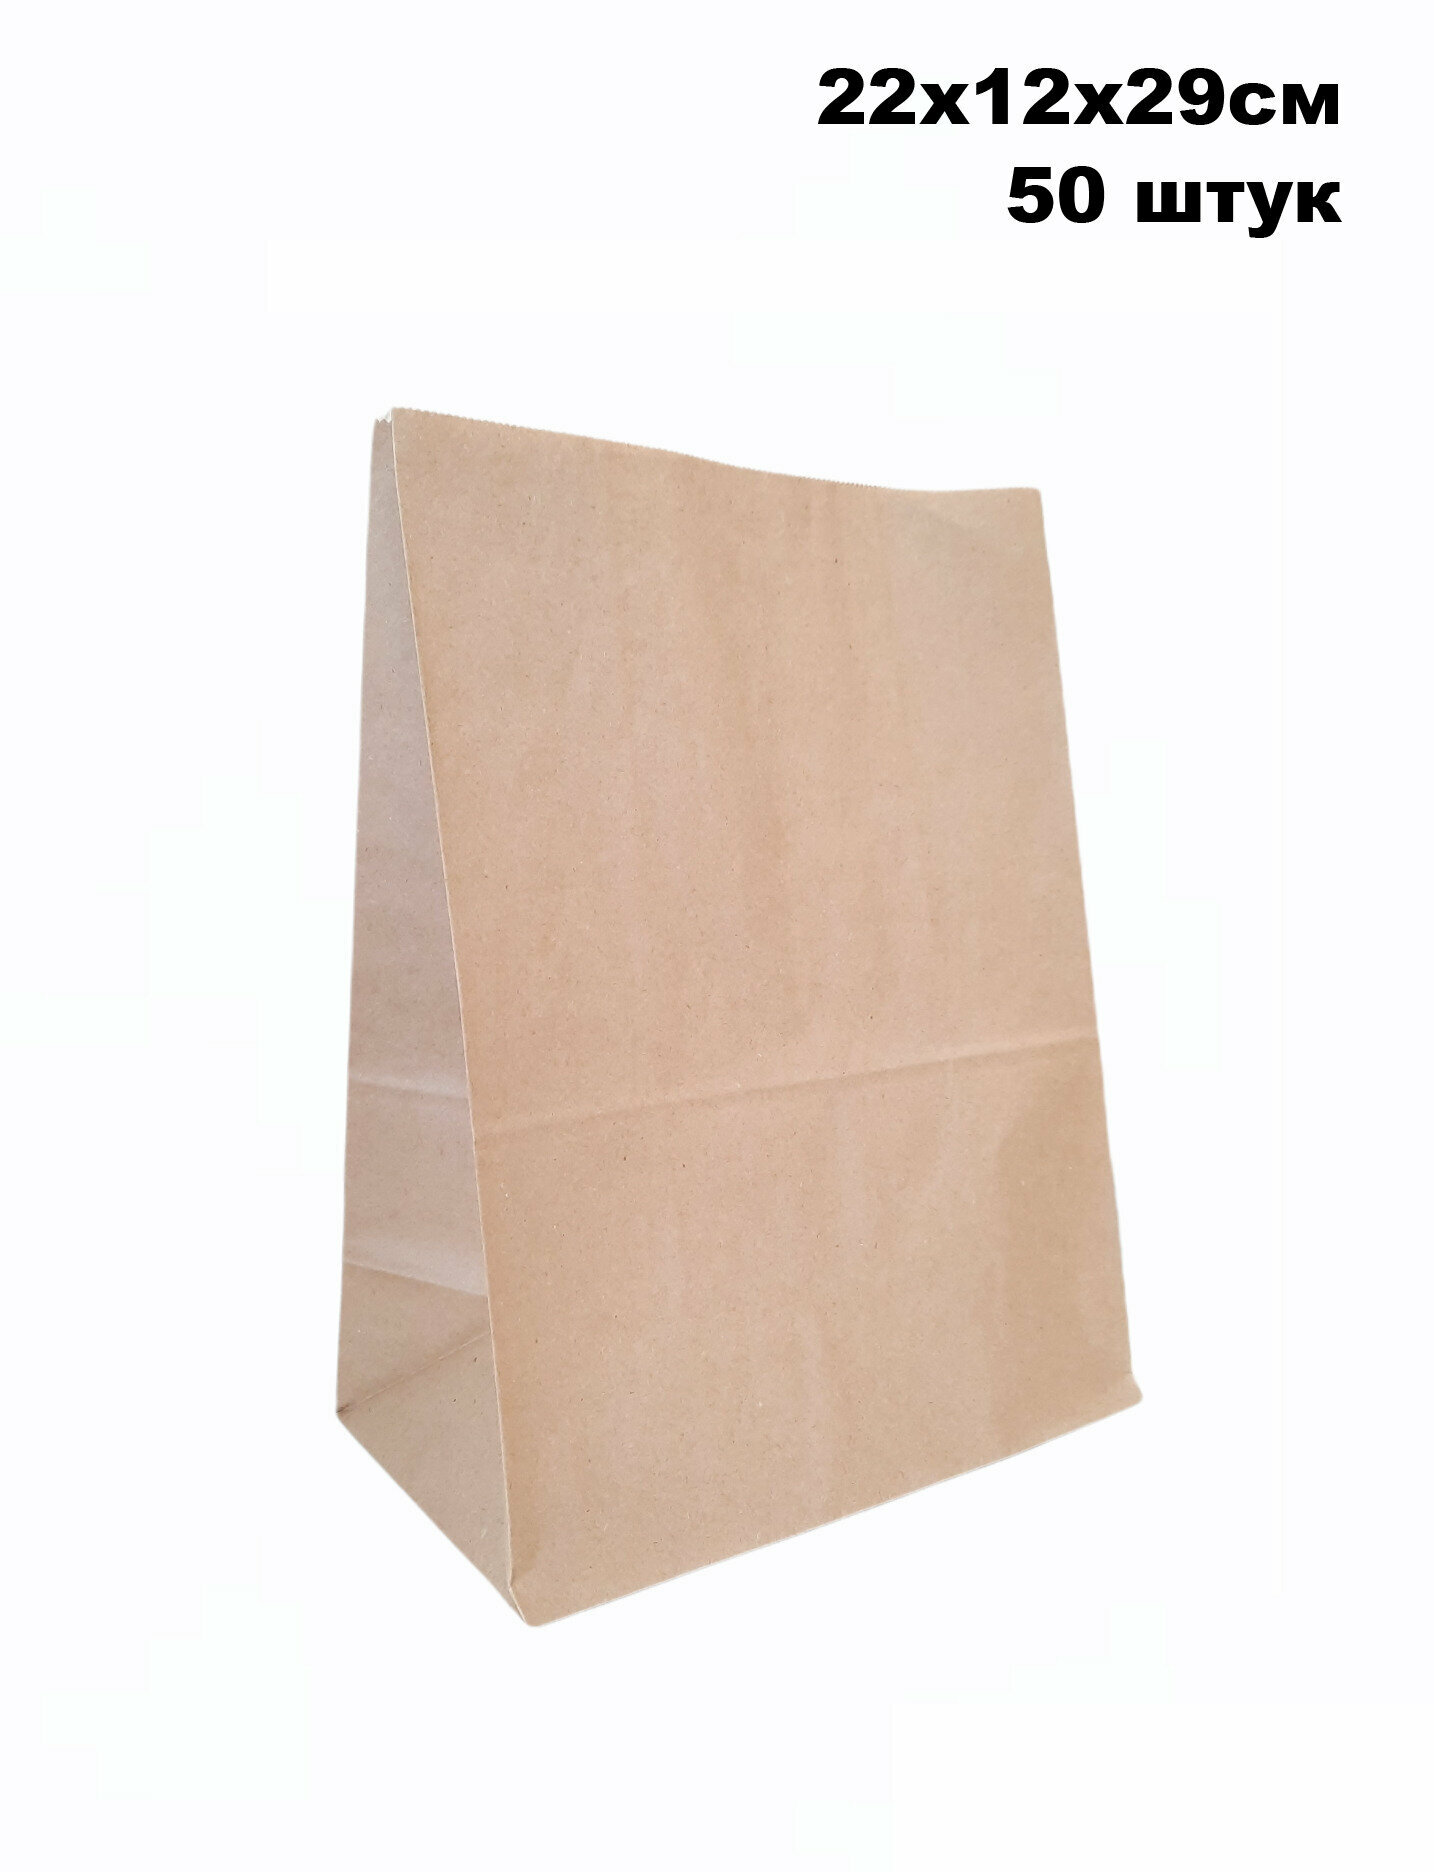 Бумажный крафт пакет без ручек 220х120х290мм, 50штук (50г./м. кв.)